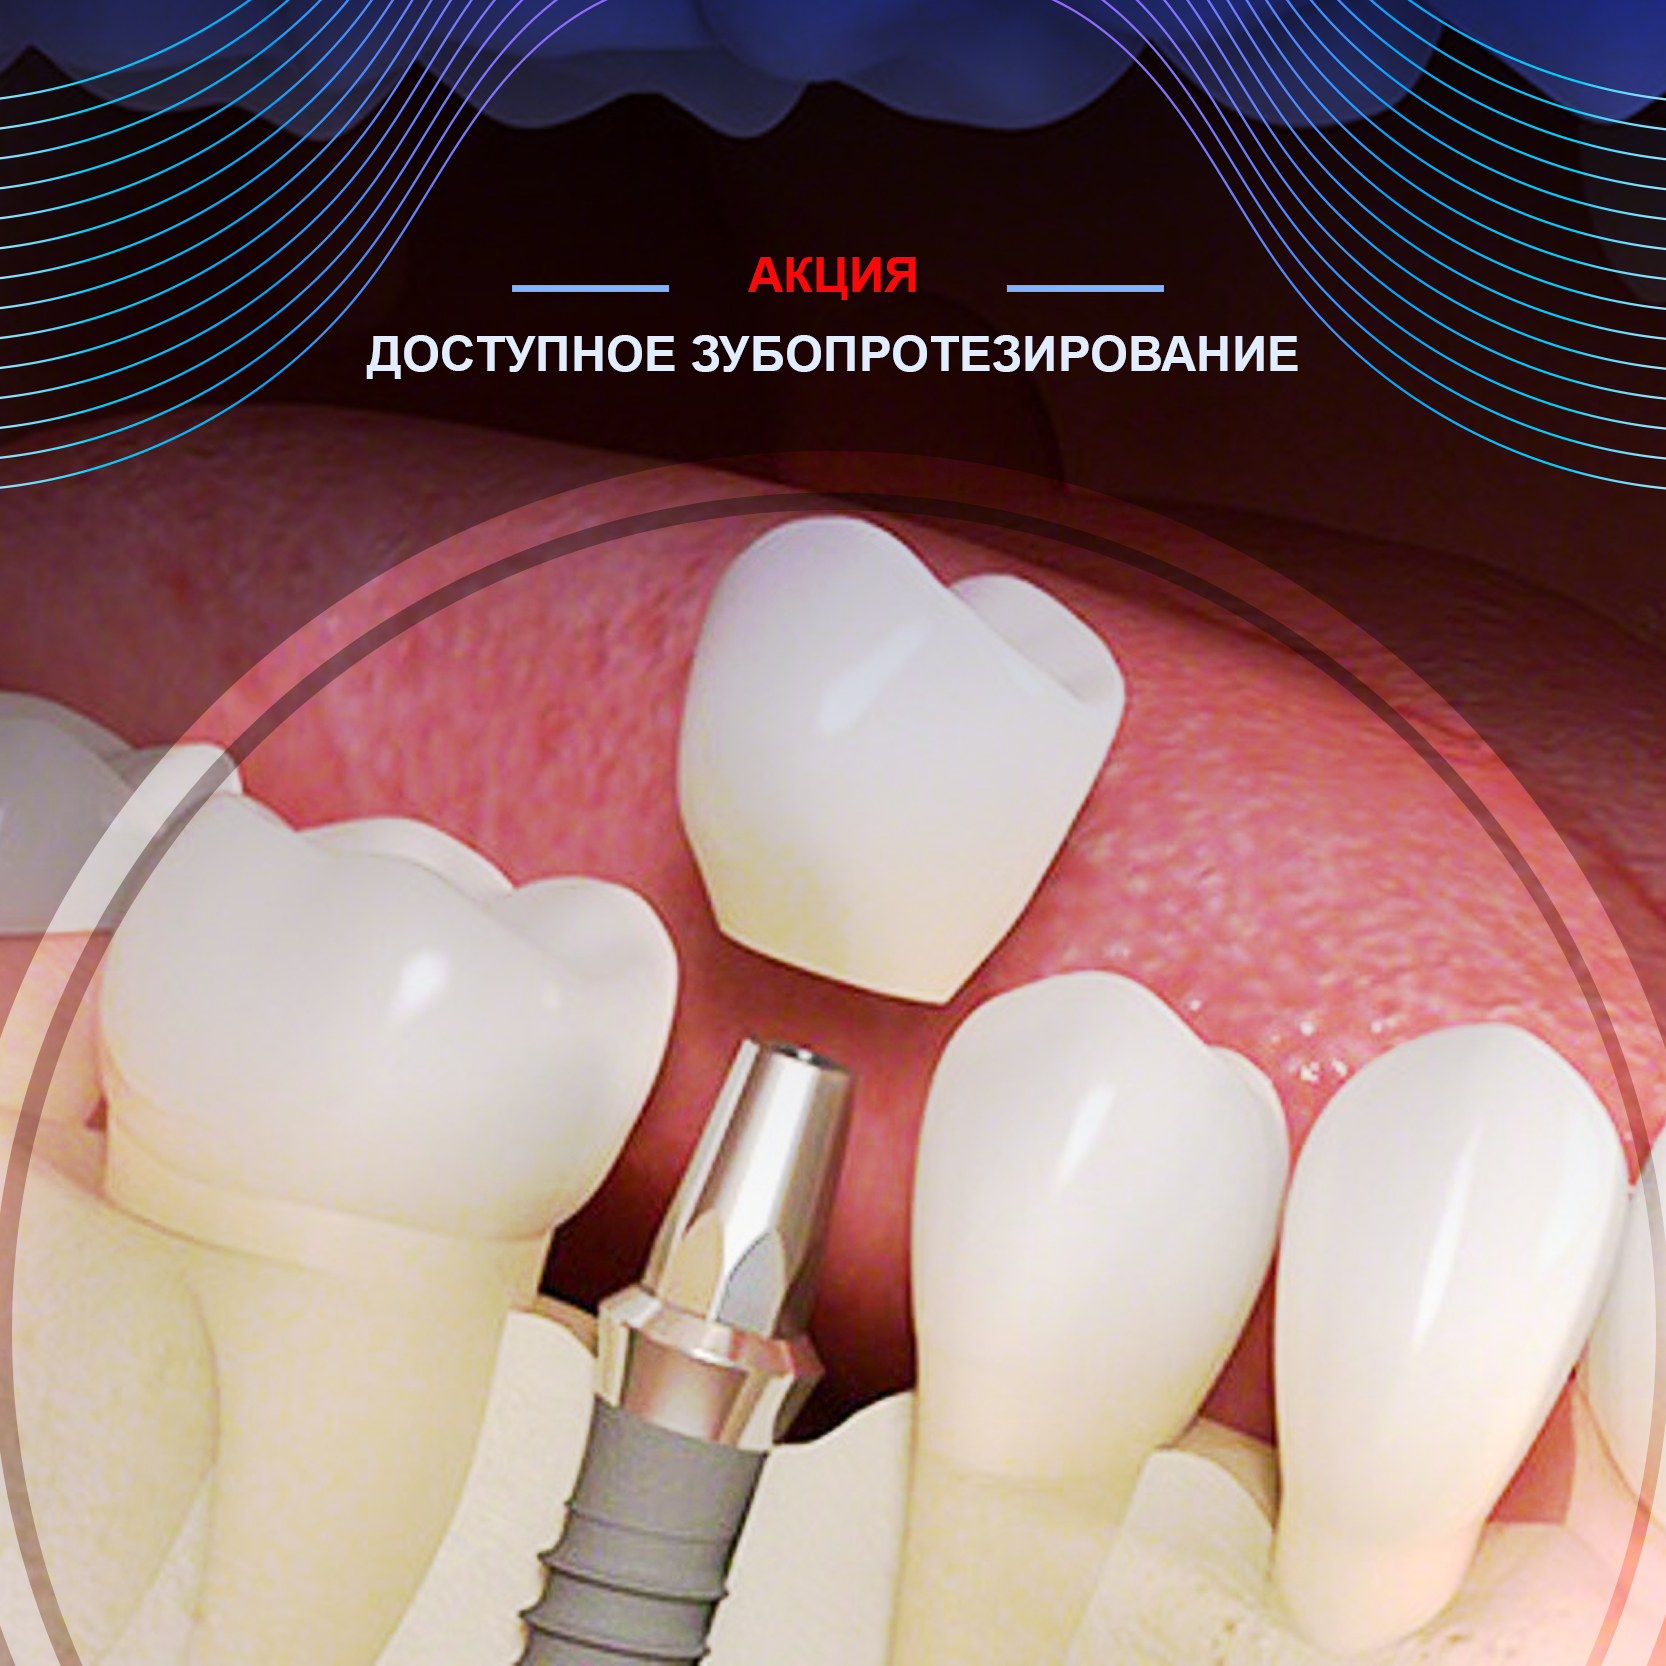 Восстановление зуба металлокерамической коронкой  и протезирование на имплантате с выгодой до 30%